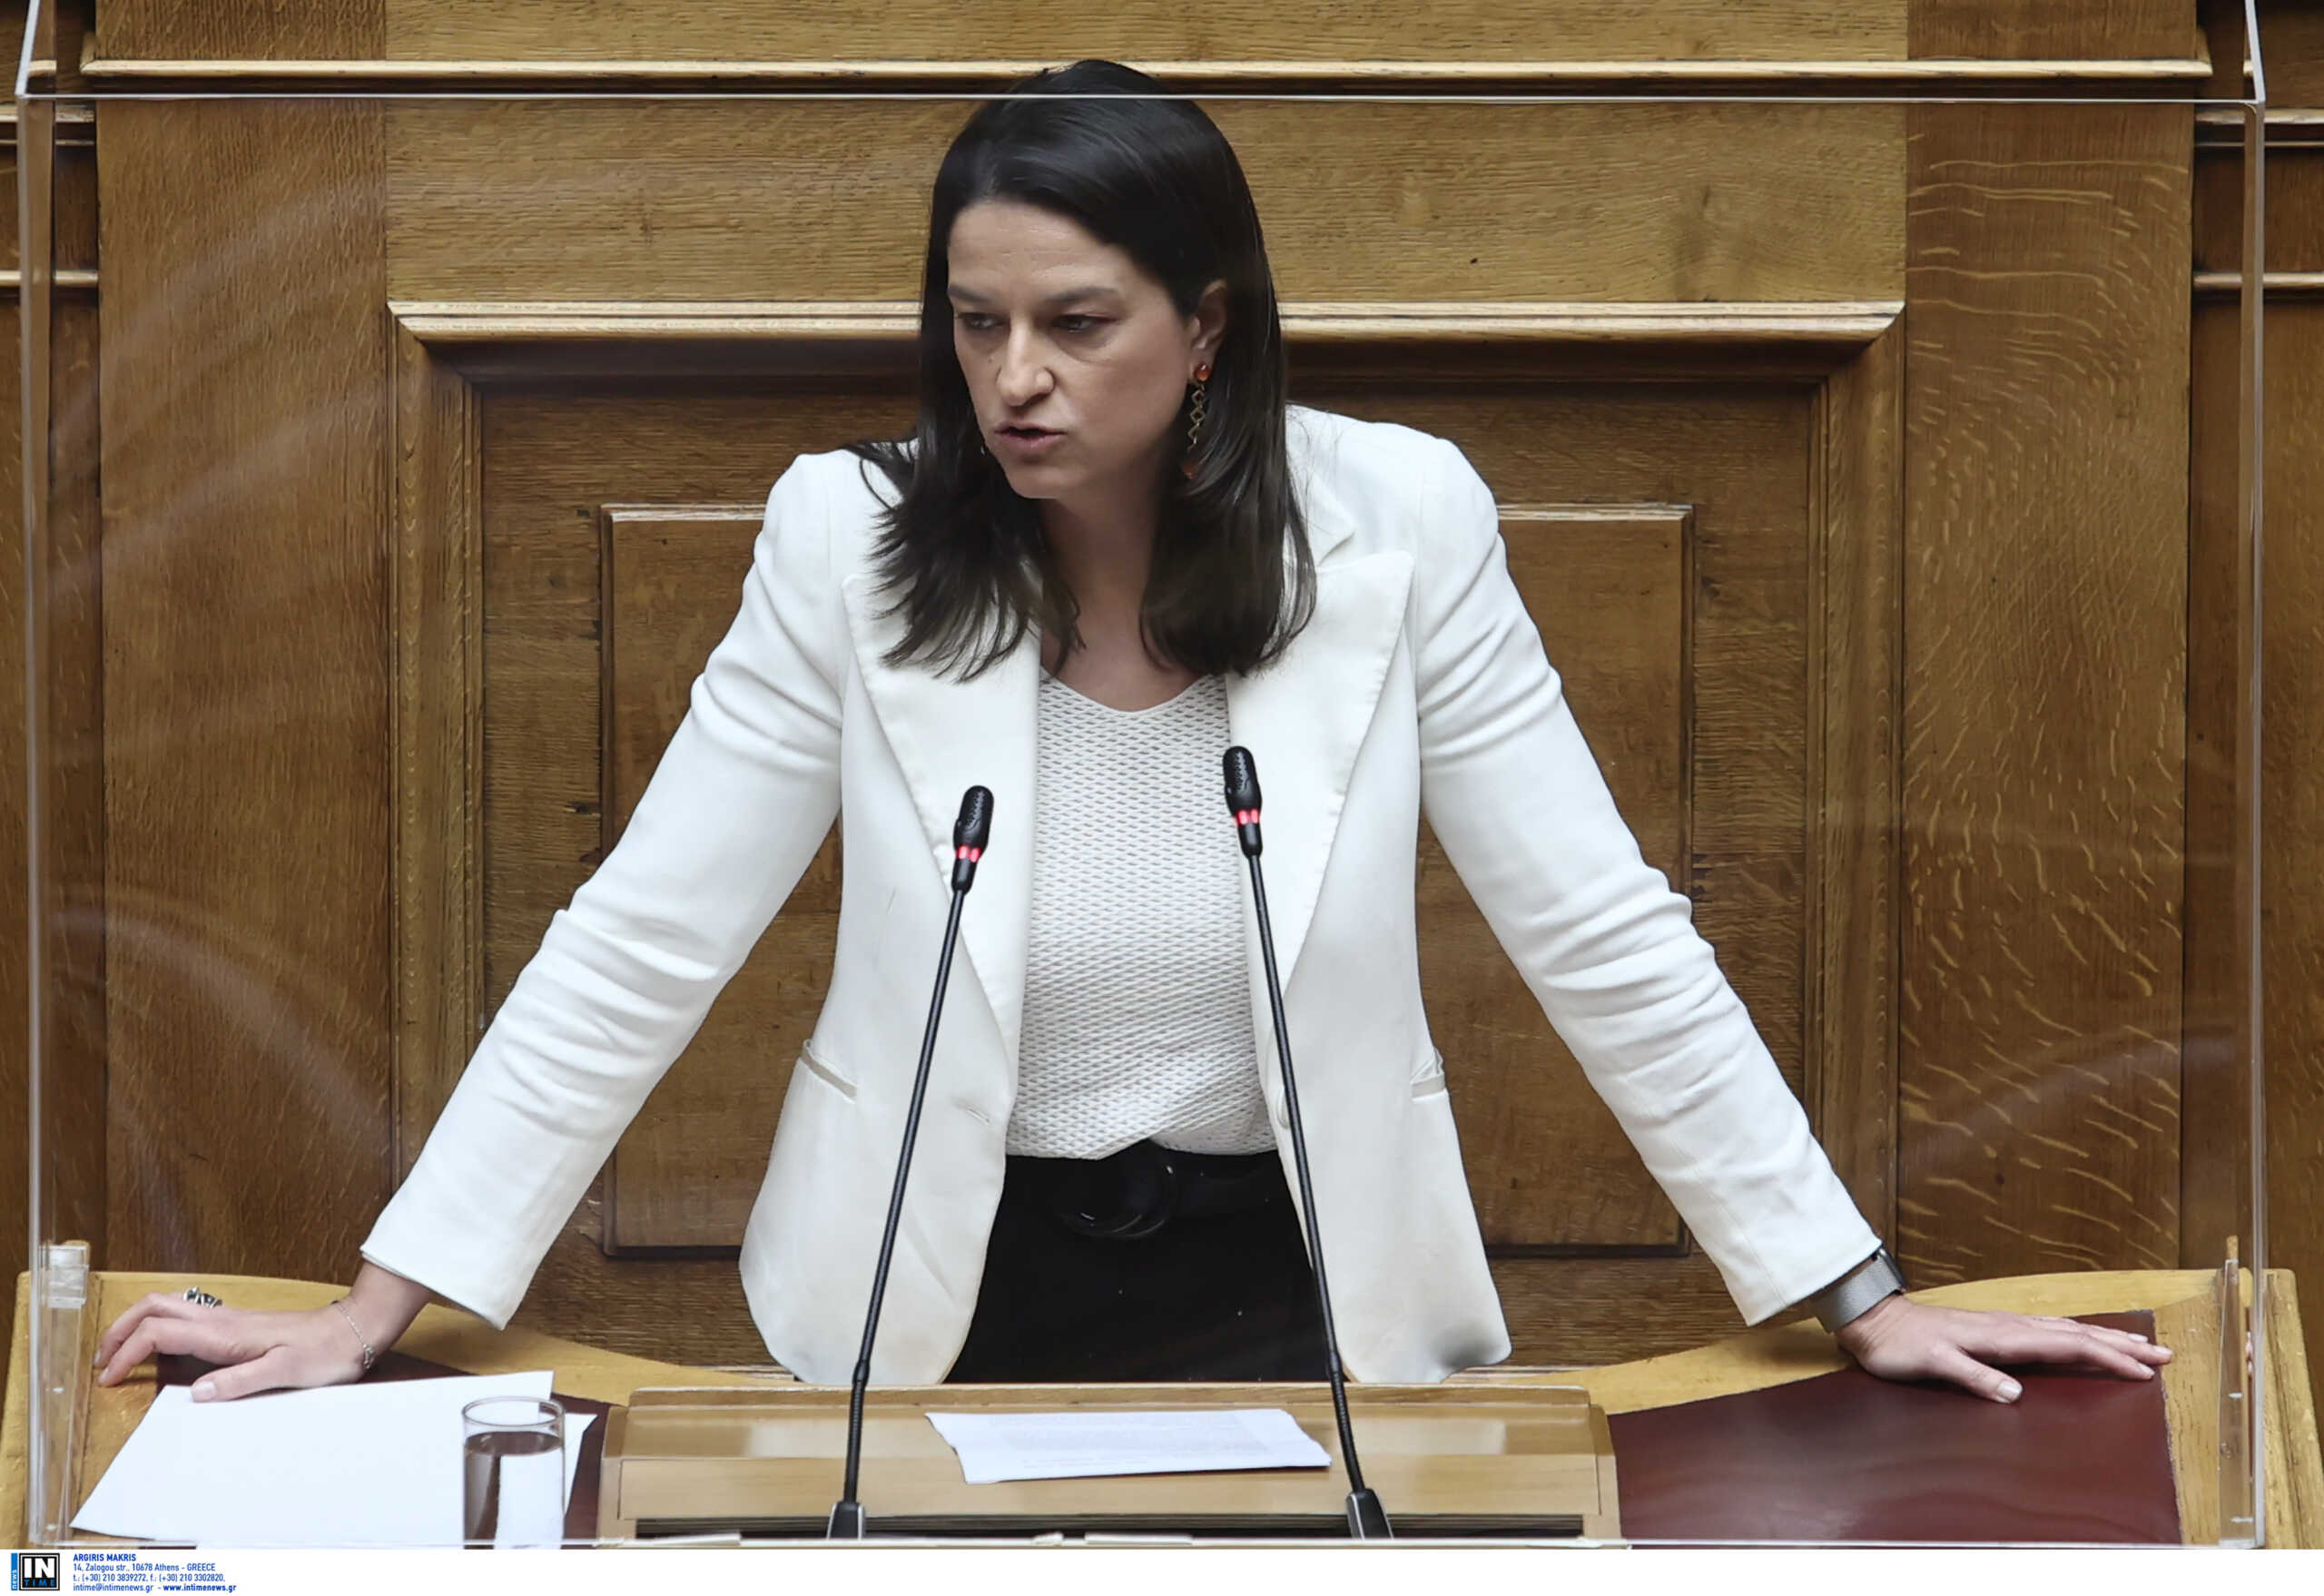 Κεραμέως: Νίκη του πολιτικού συστήματος η ψήφιση του νομοσχεδίου για την ψήφο των Ελλήνων του εξωτερικού